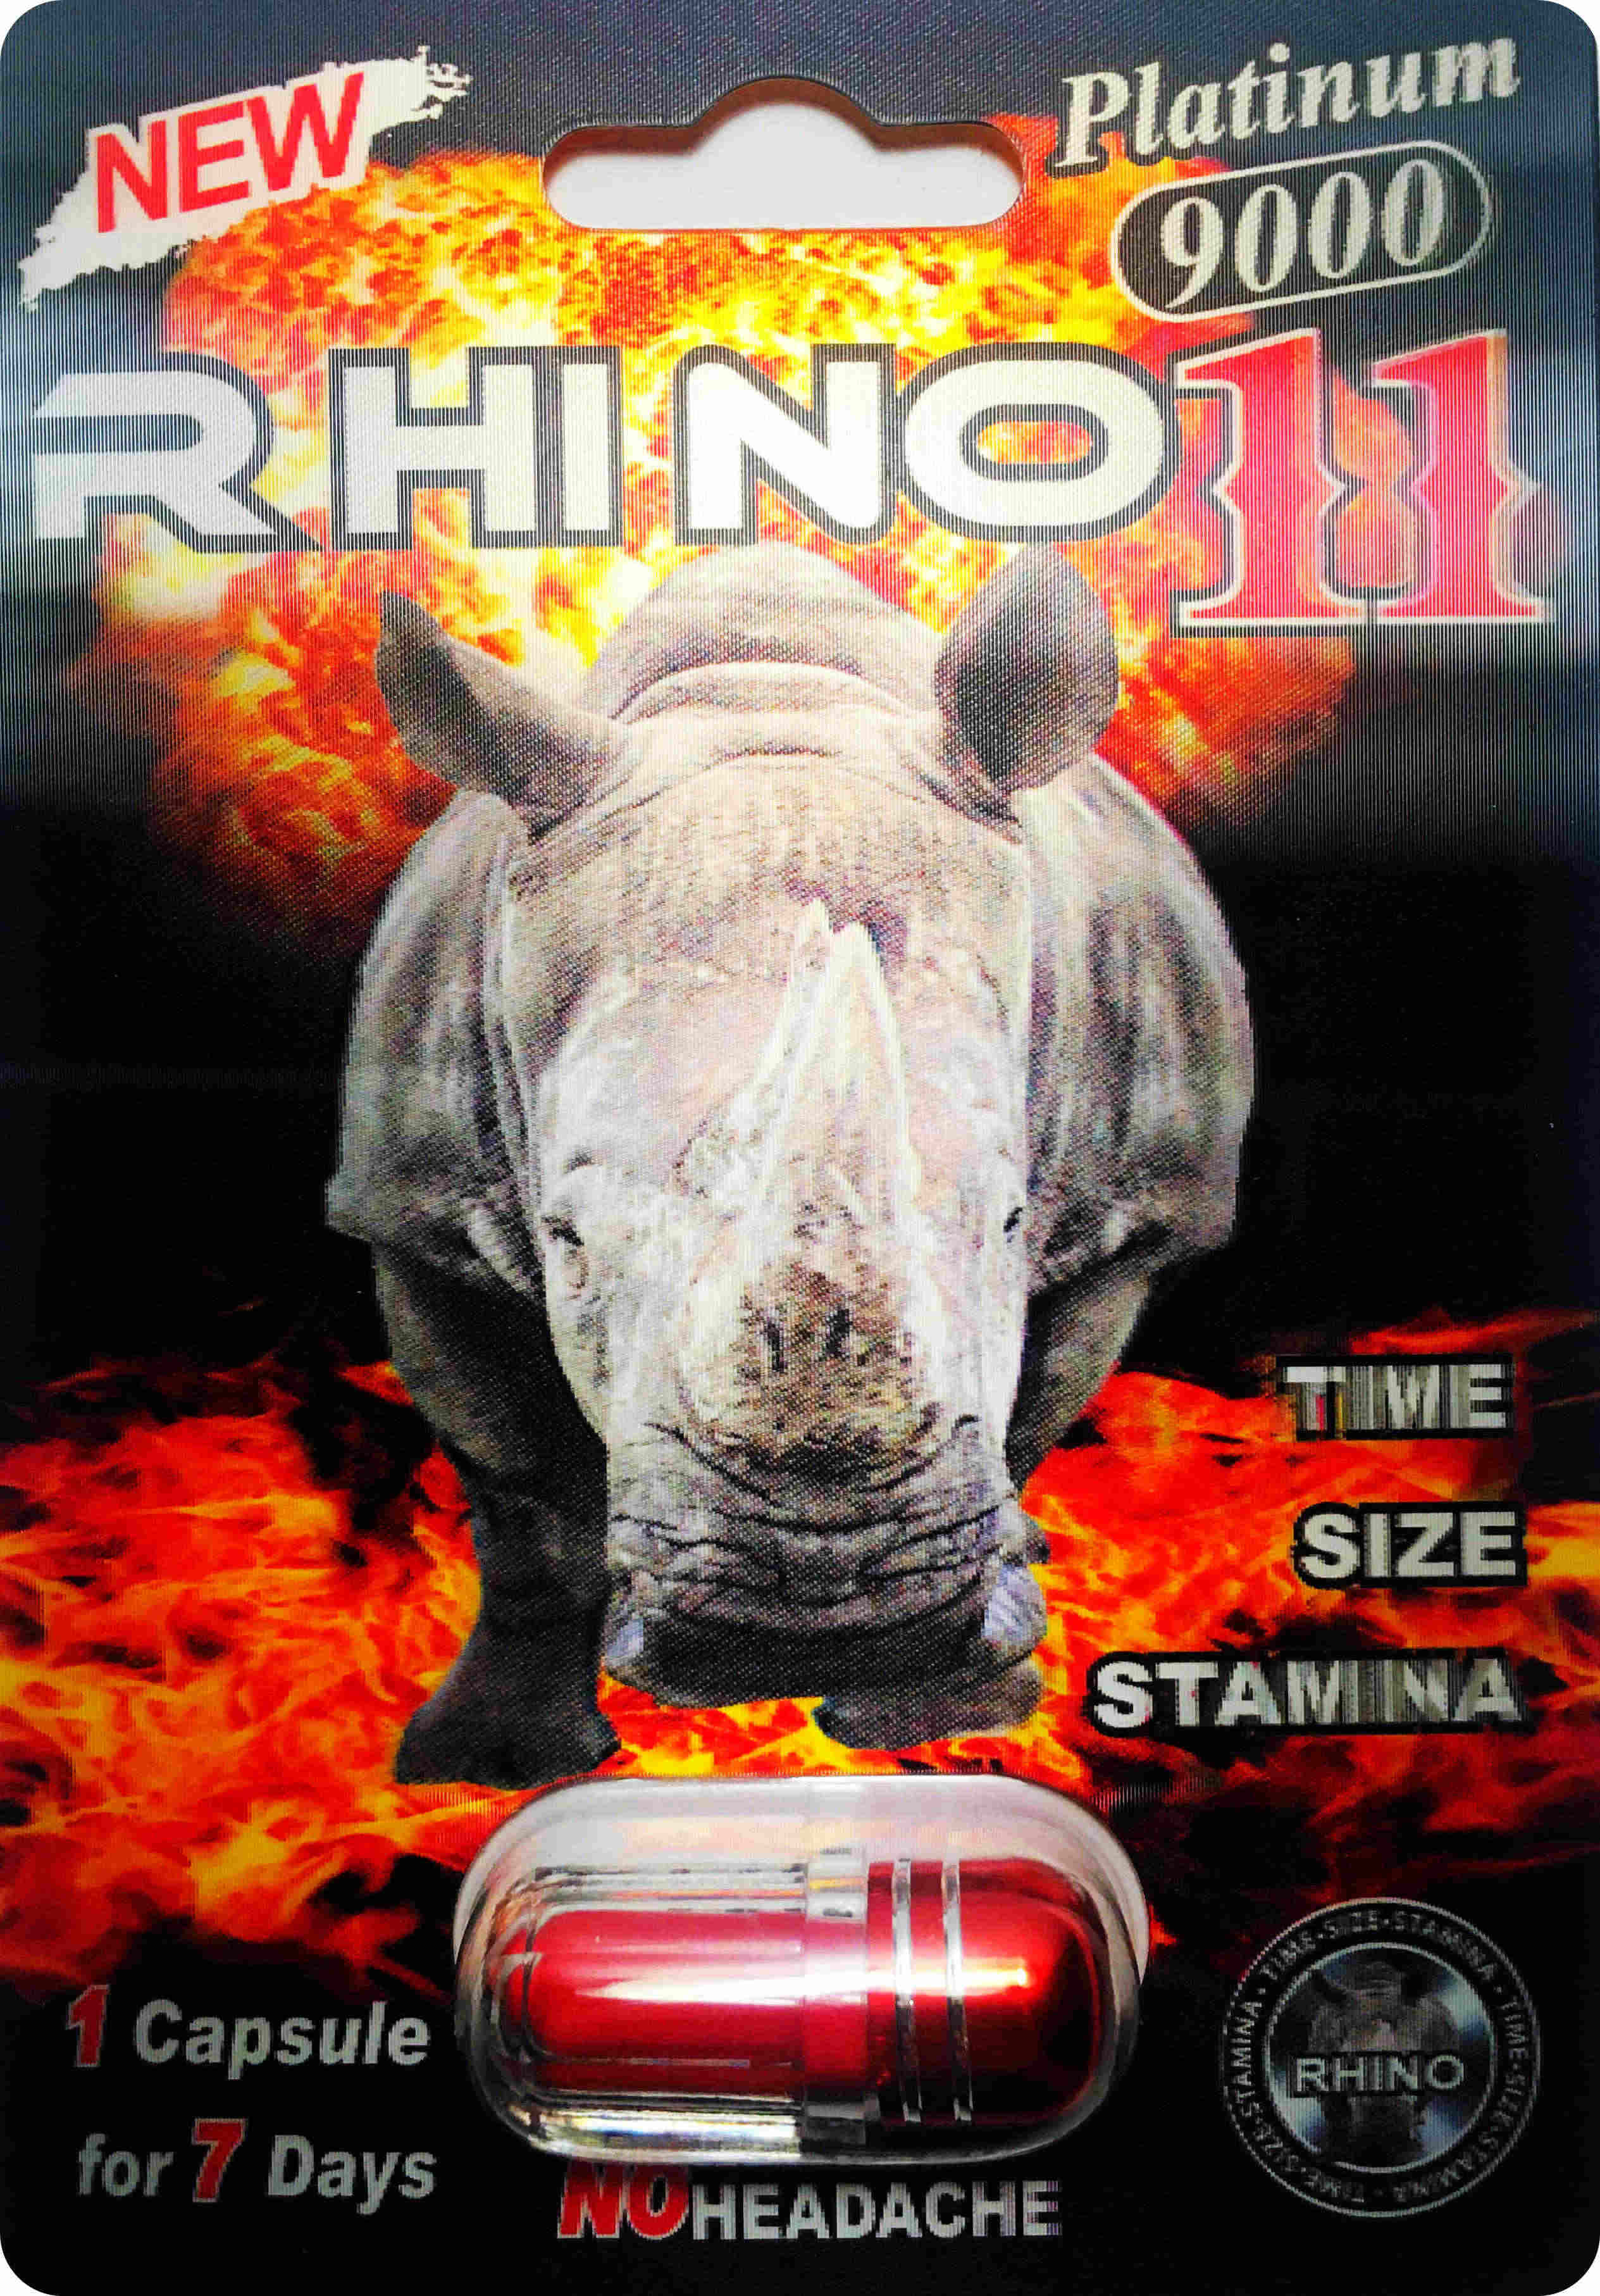 new rhino 7 platinum 75000